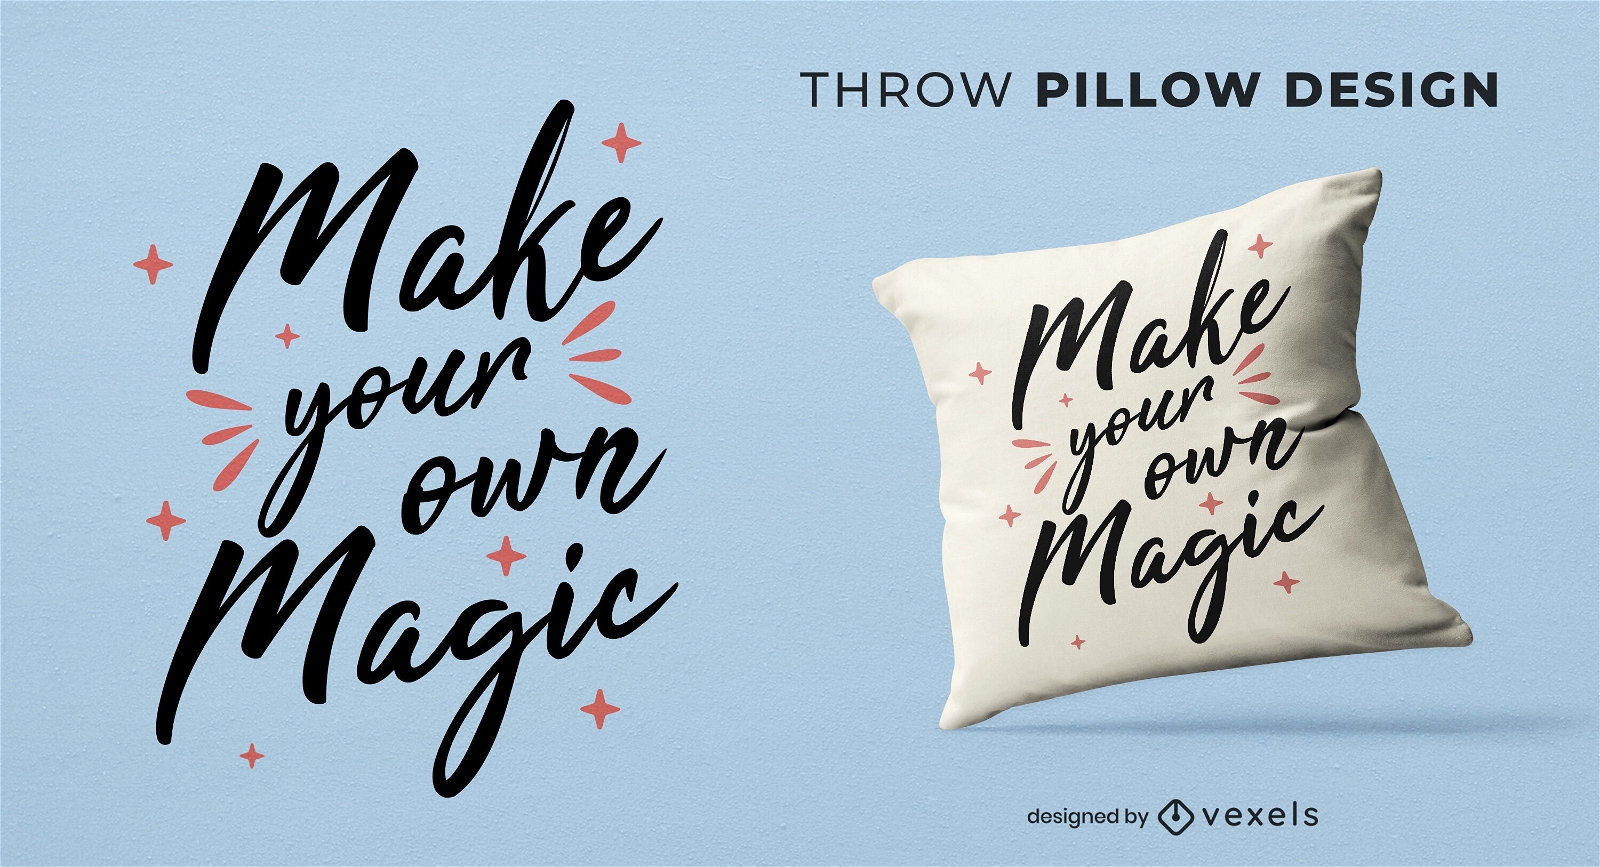 Your magic throw pillow design